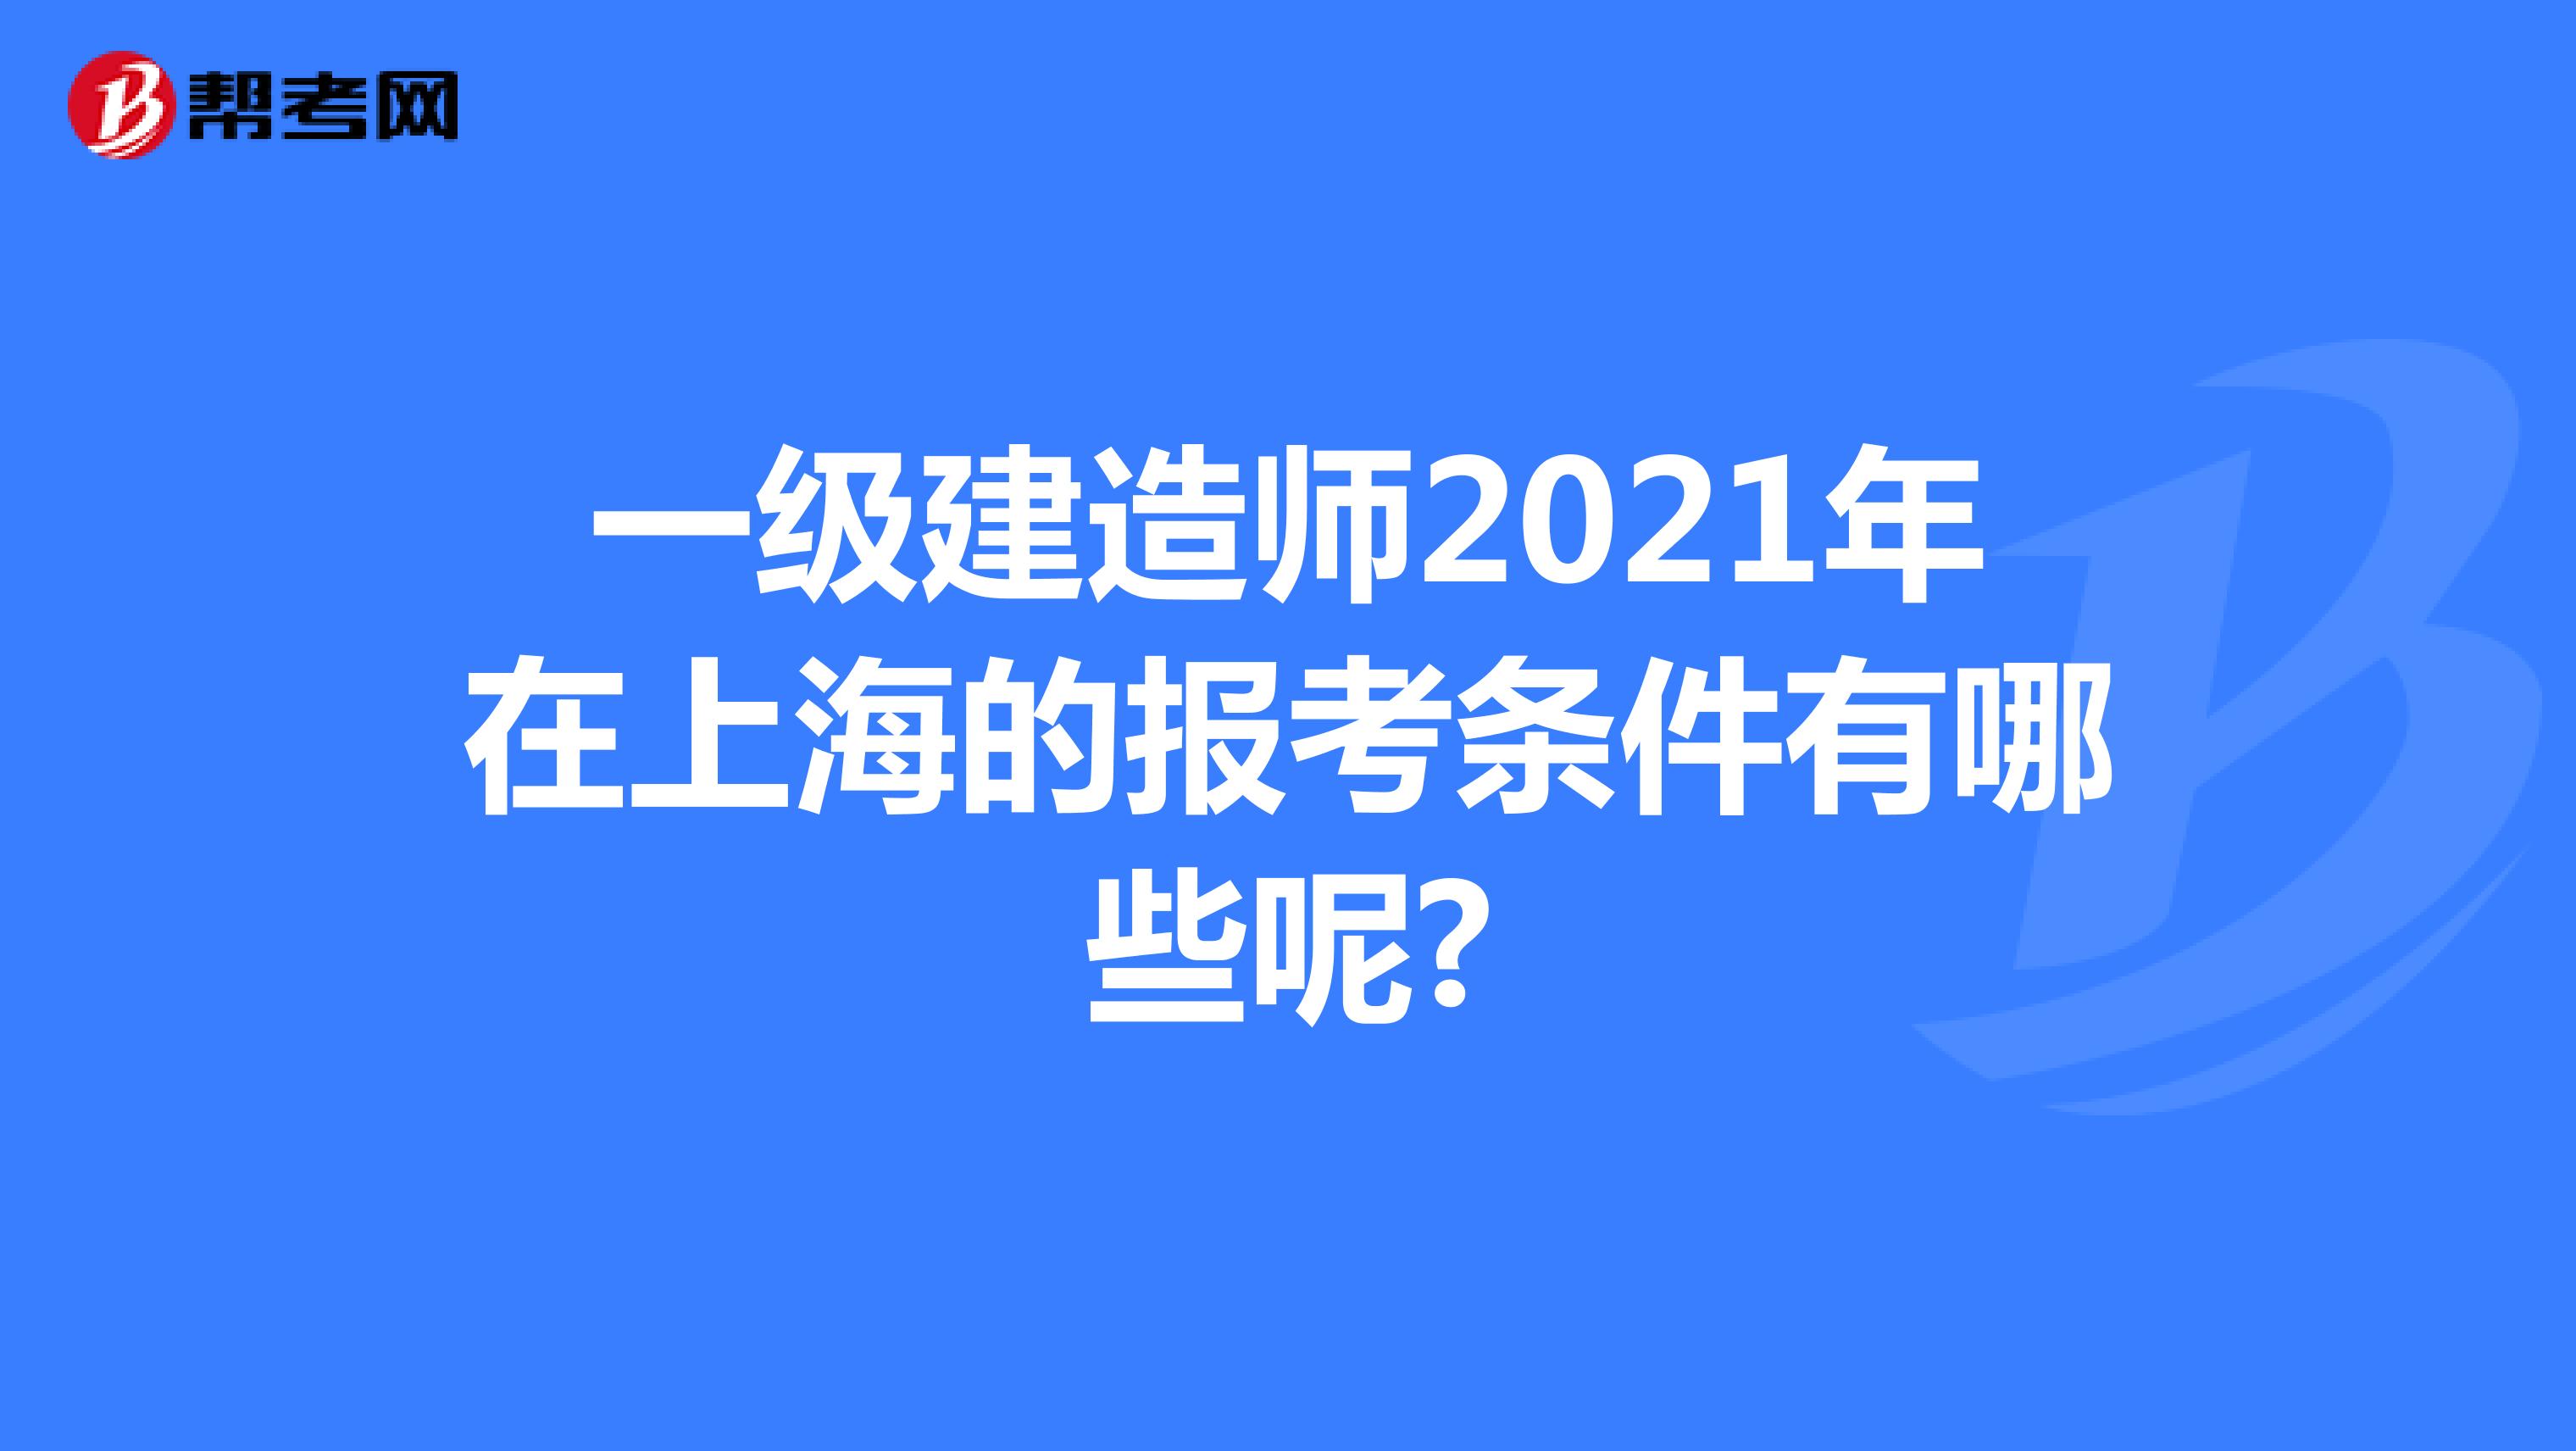 一级建造师2021年在上海的报考条件有哪些呢?